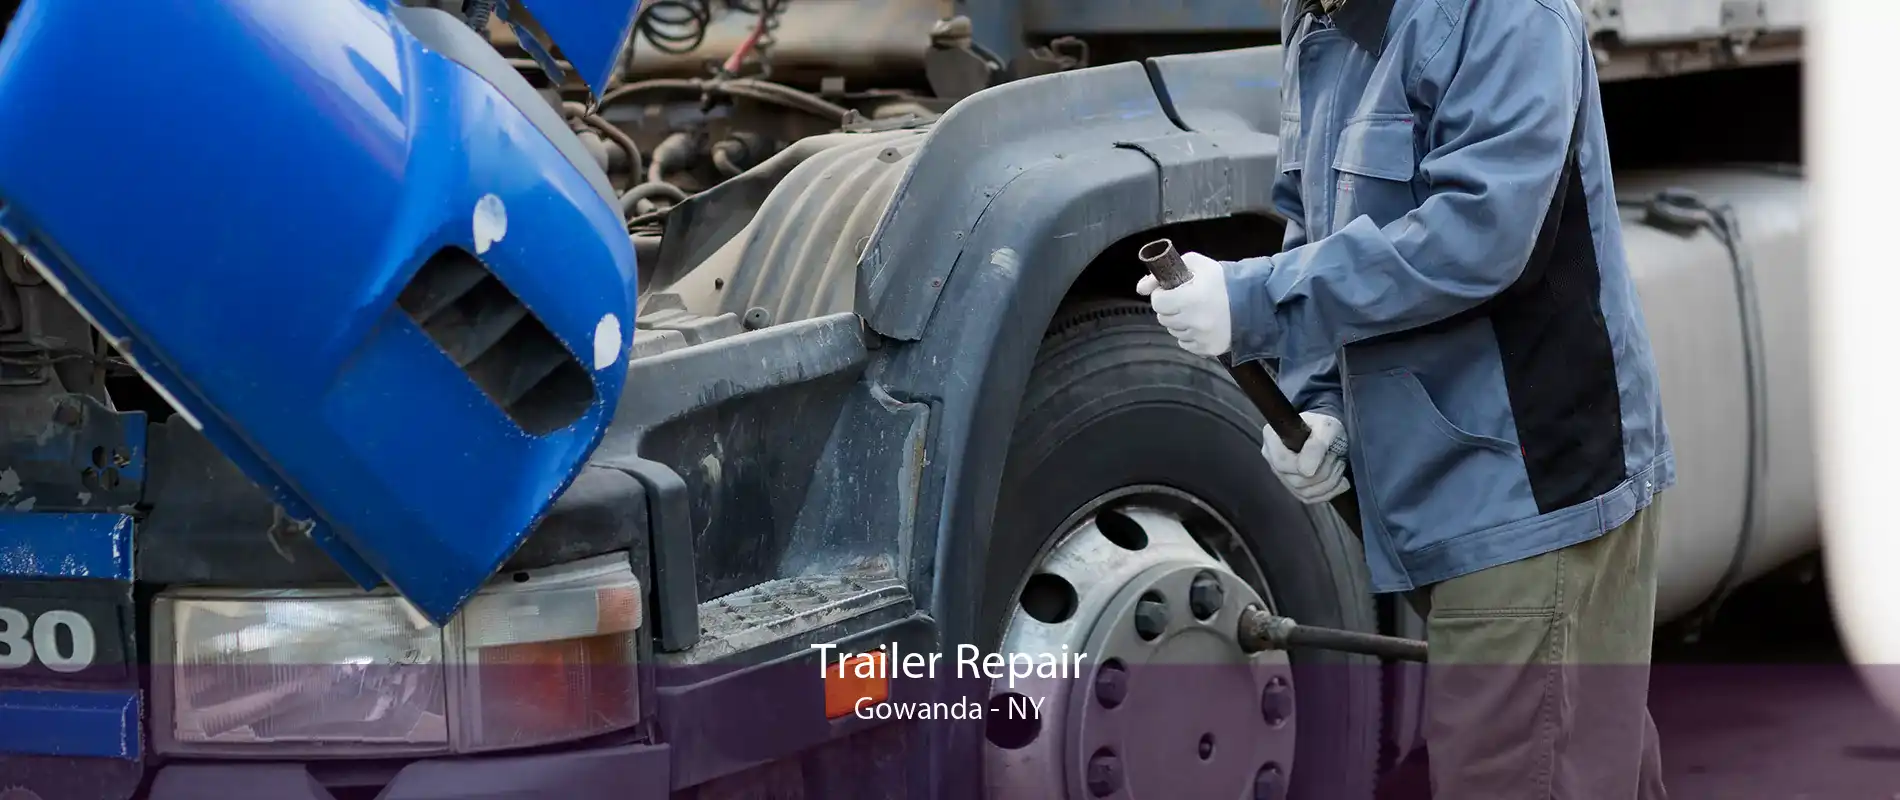 Trailer Repair Gowanda - NY